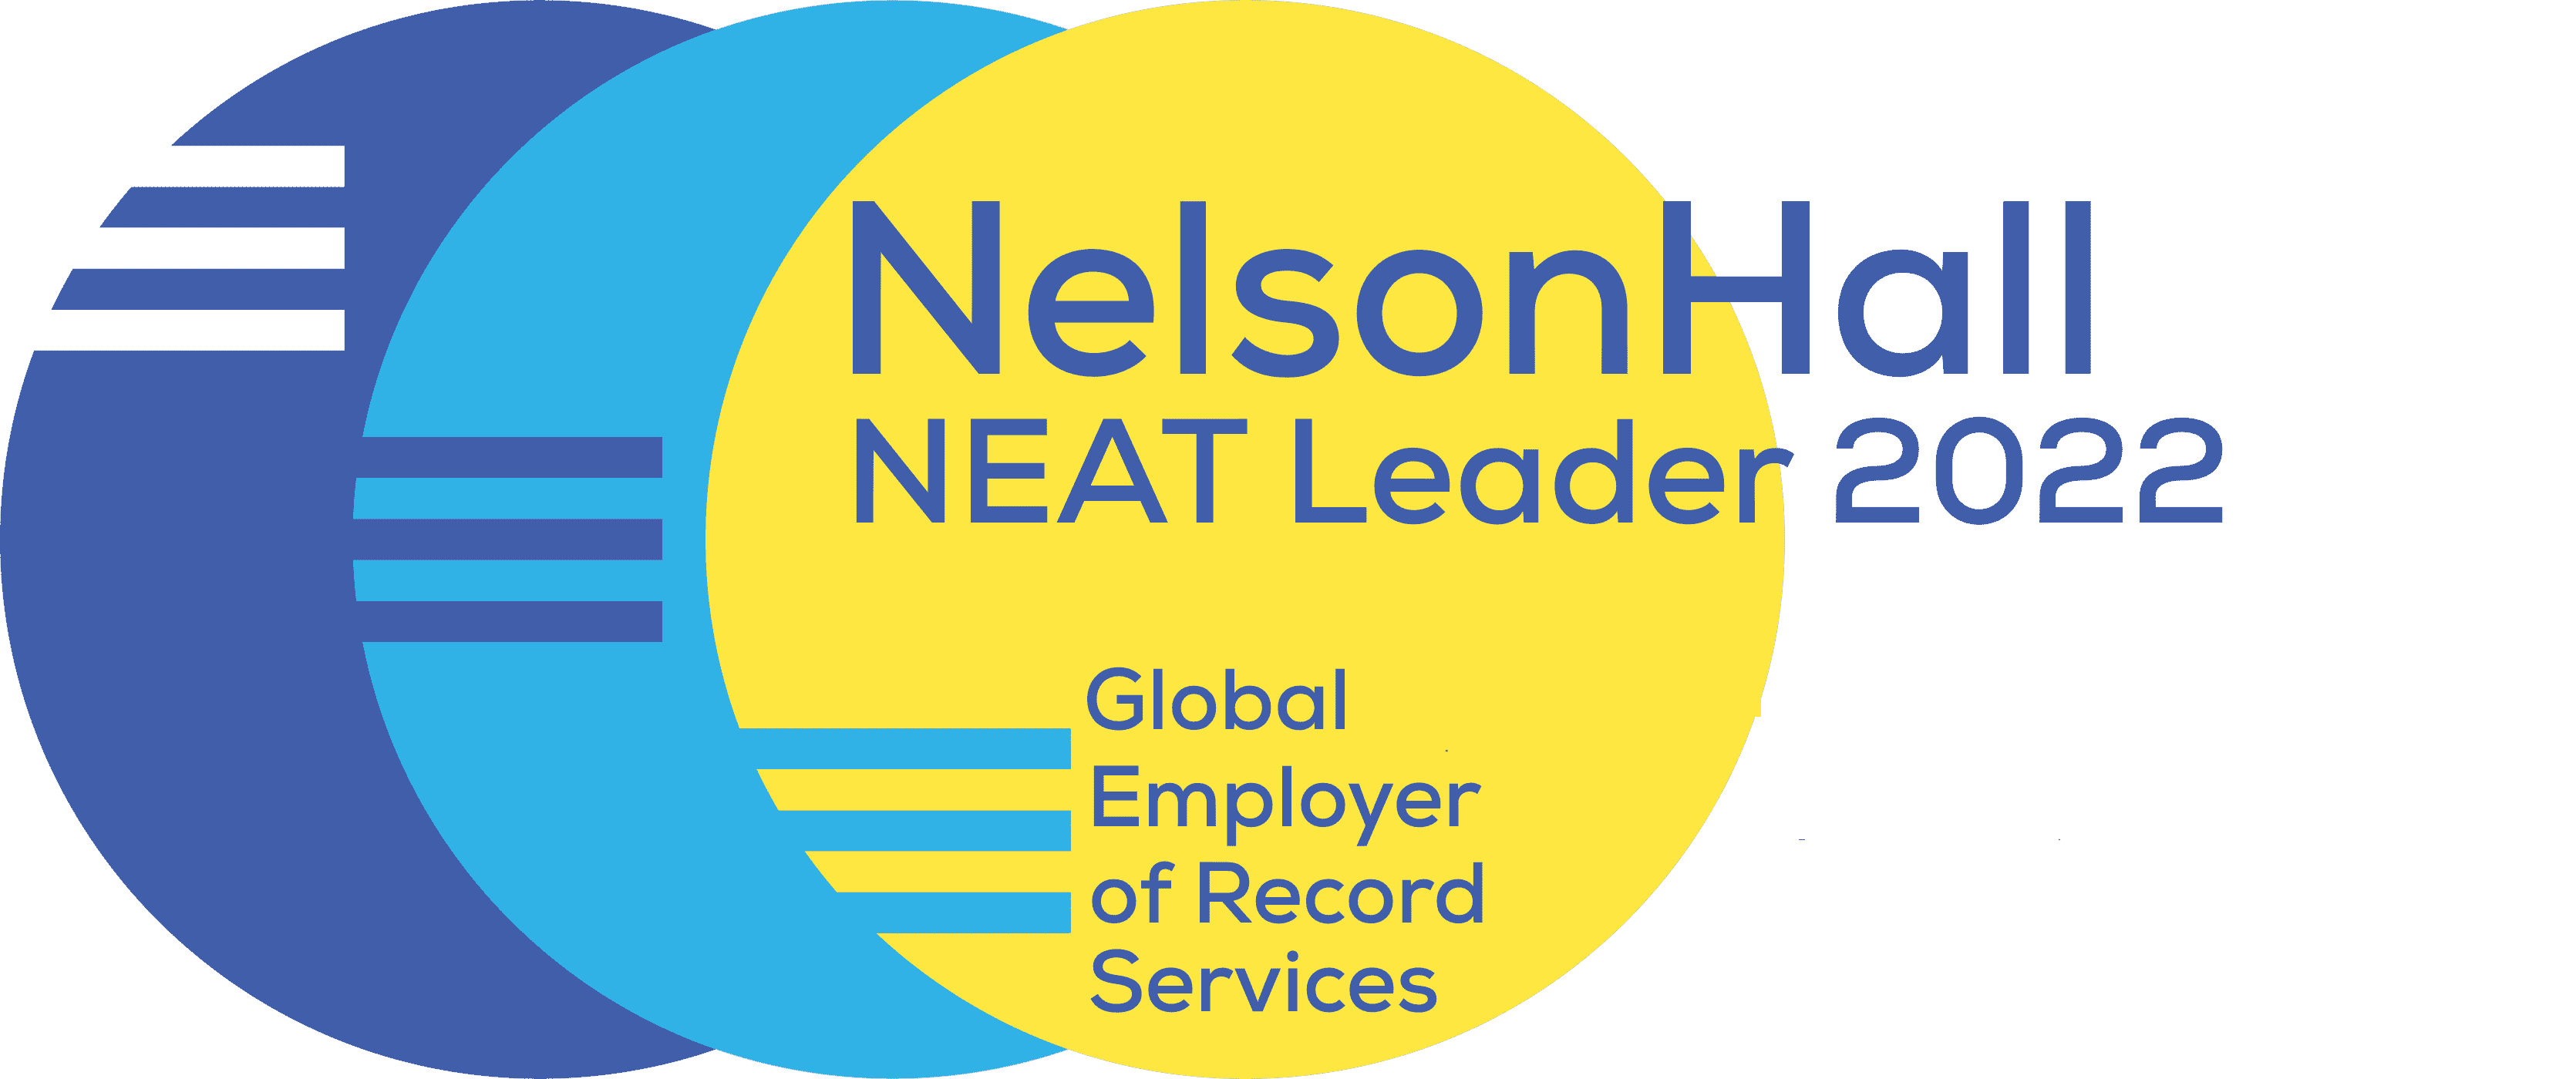 NelsonHall – omvandla genom insikter